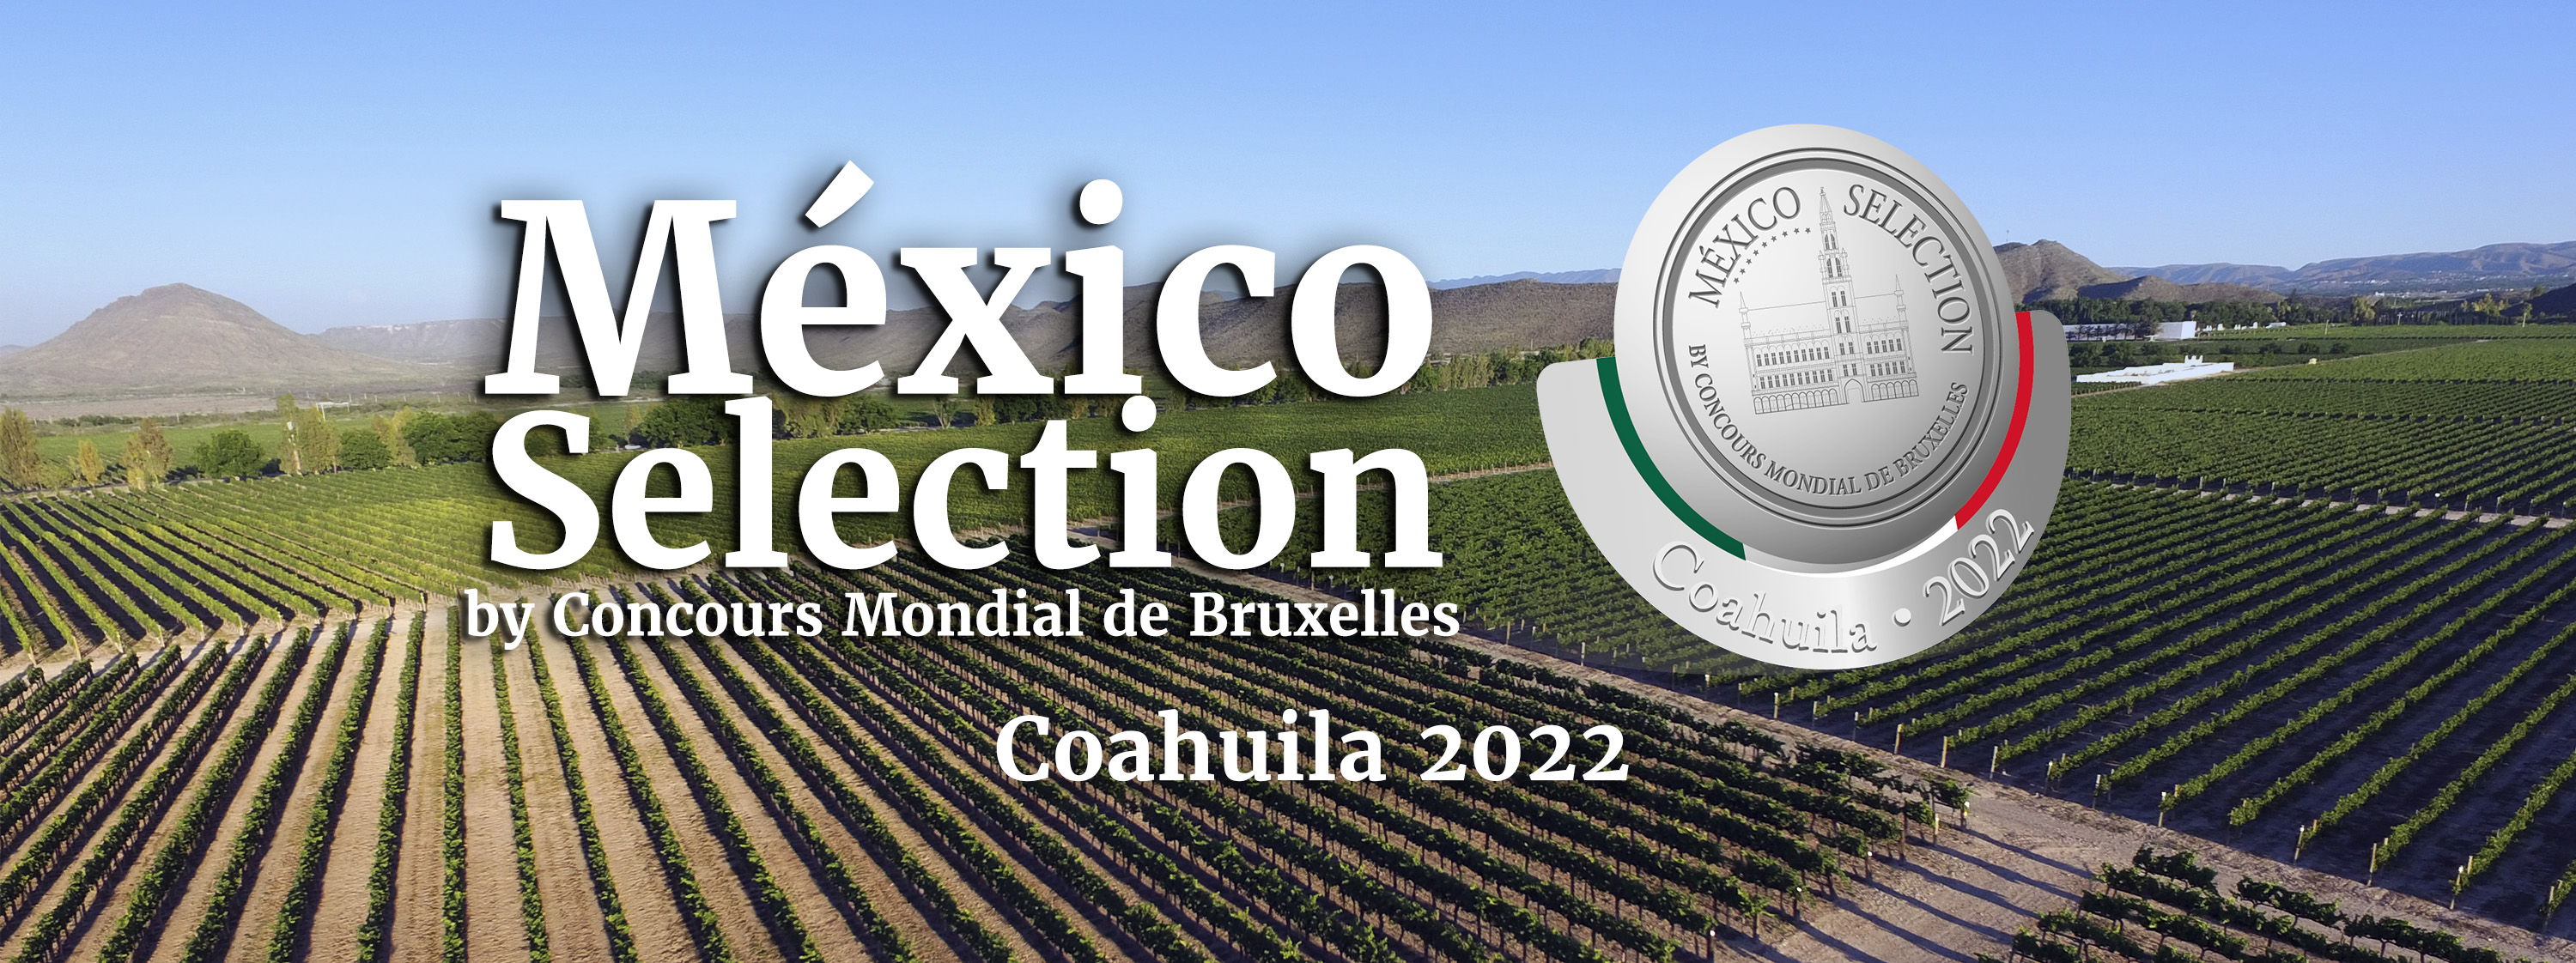 Mexico Selection by Concours Mondial de Bruxelles 2022